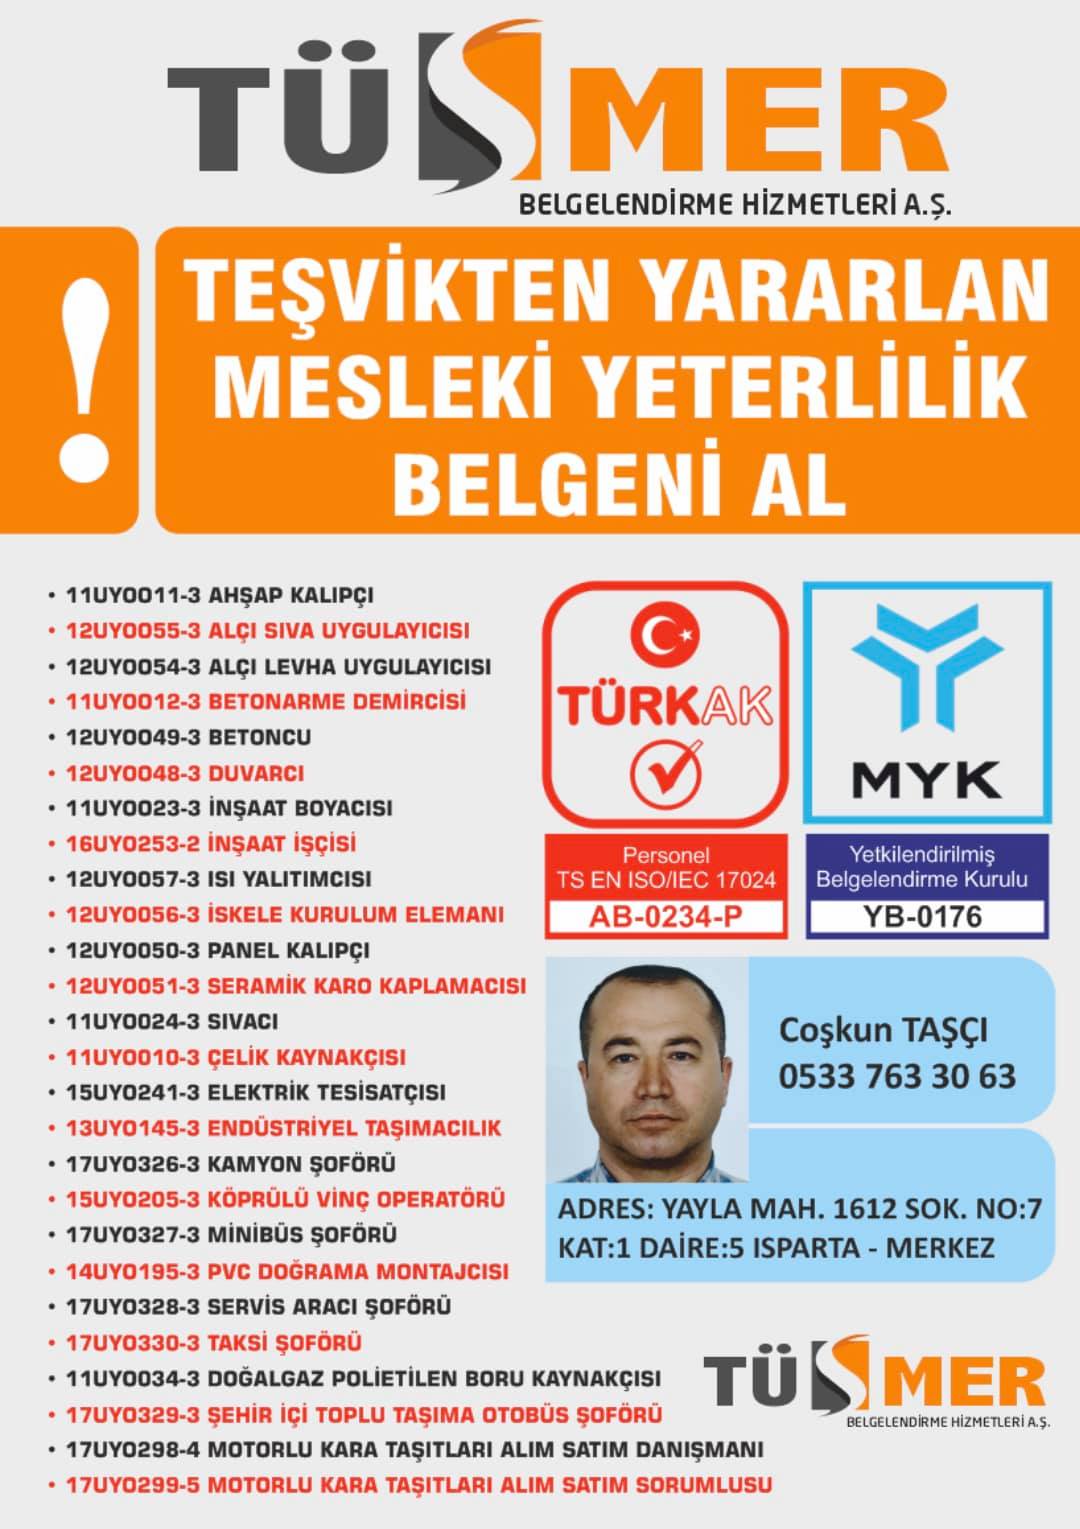 MYK MESLEKİ YETERLİLİK BELGESİ Tokatköy Beykoz İstanbul